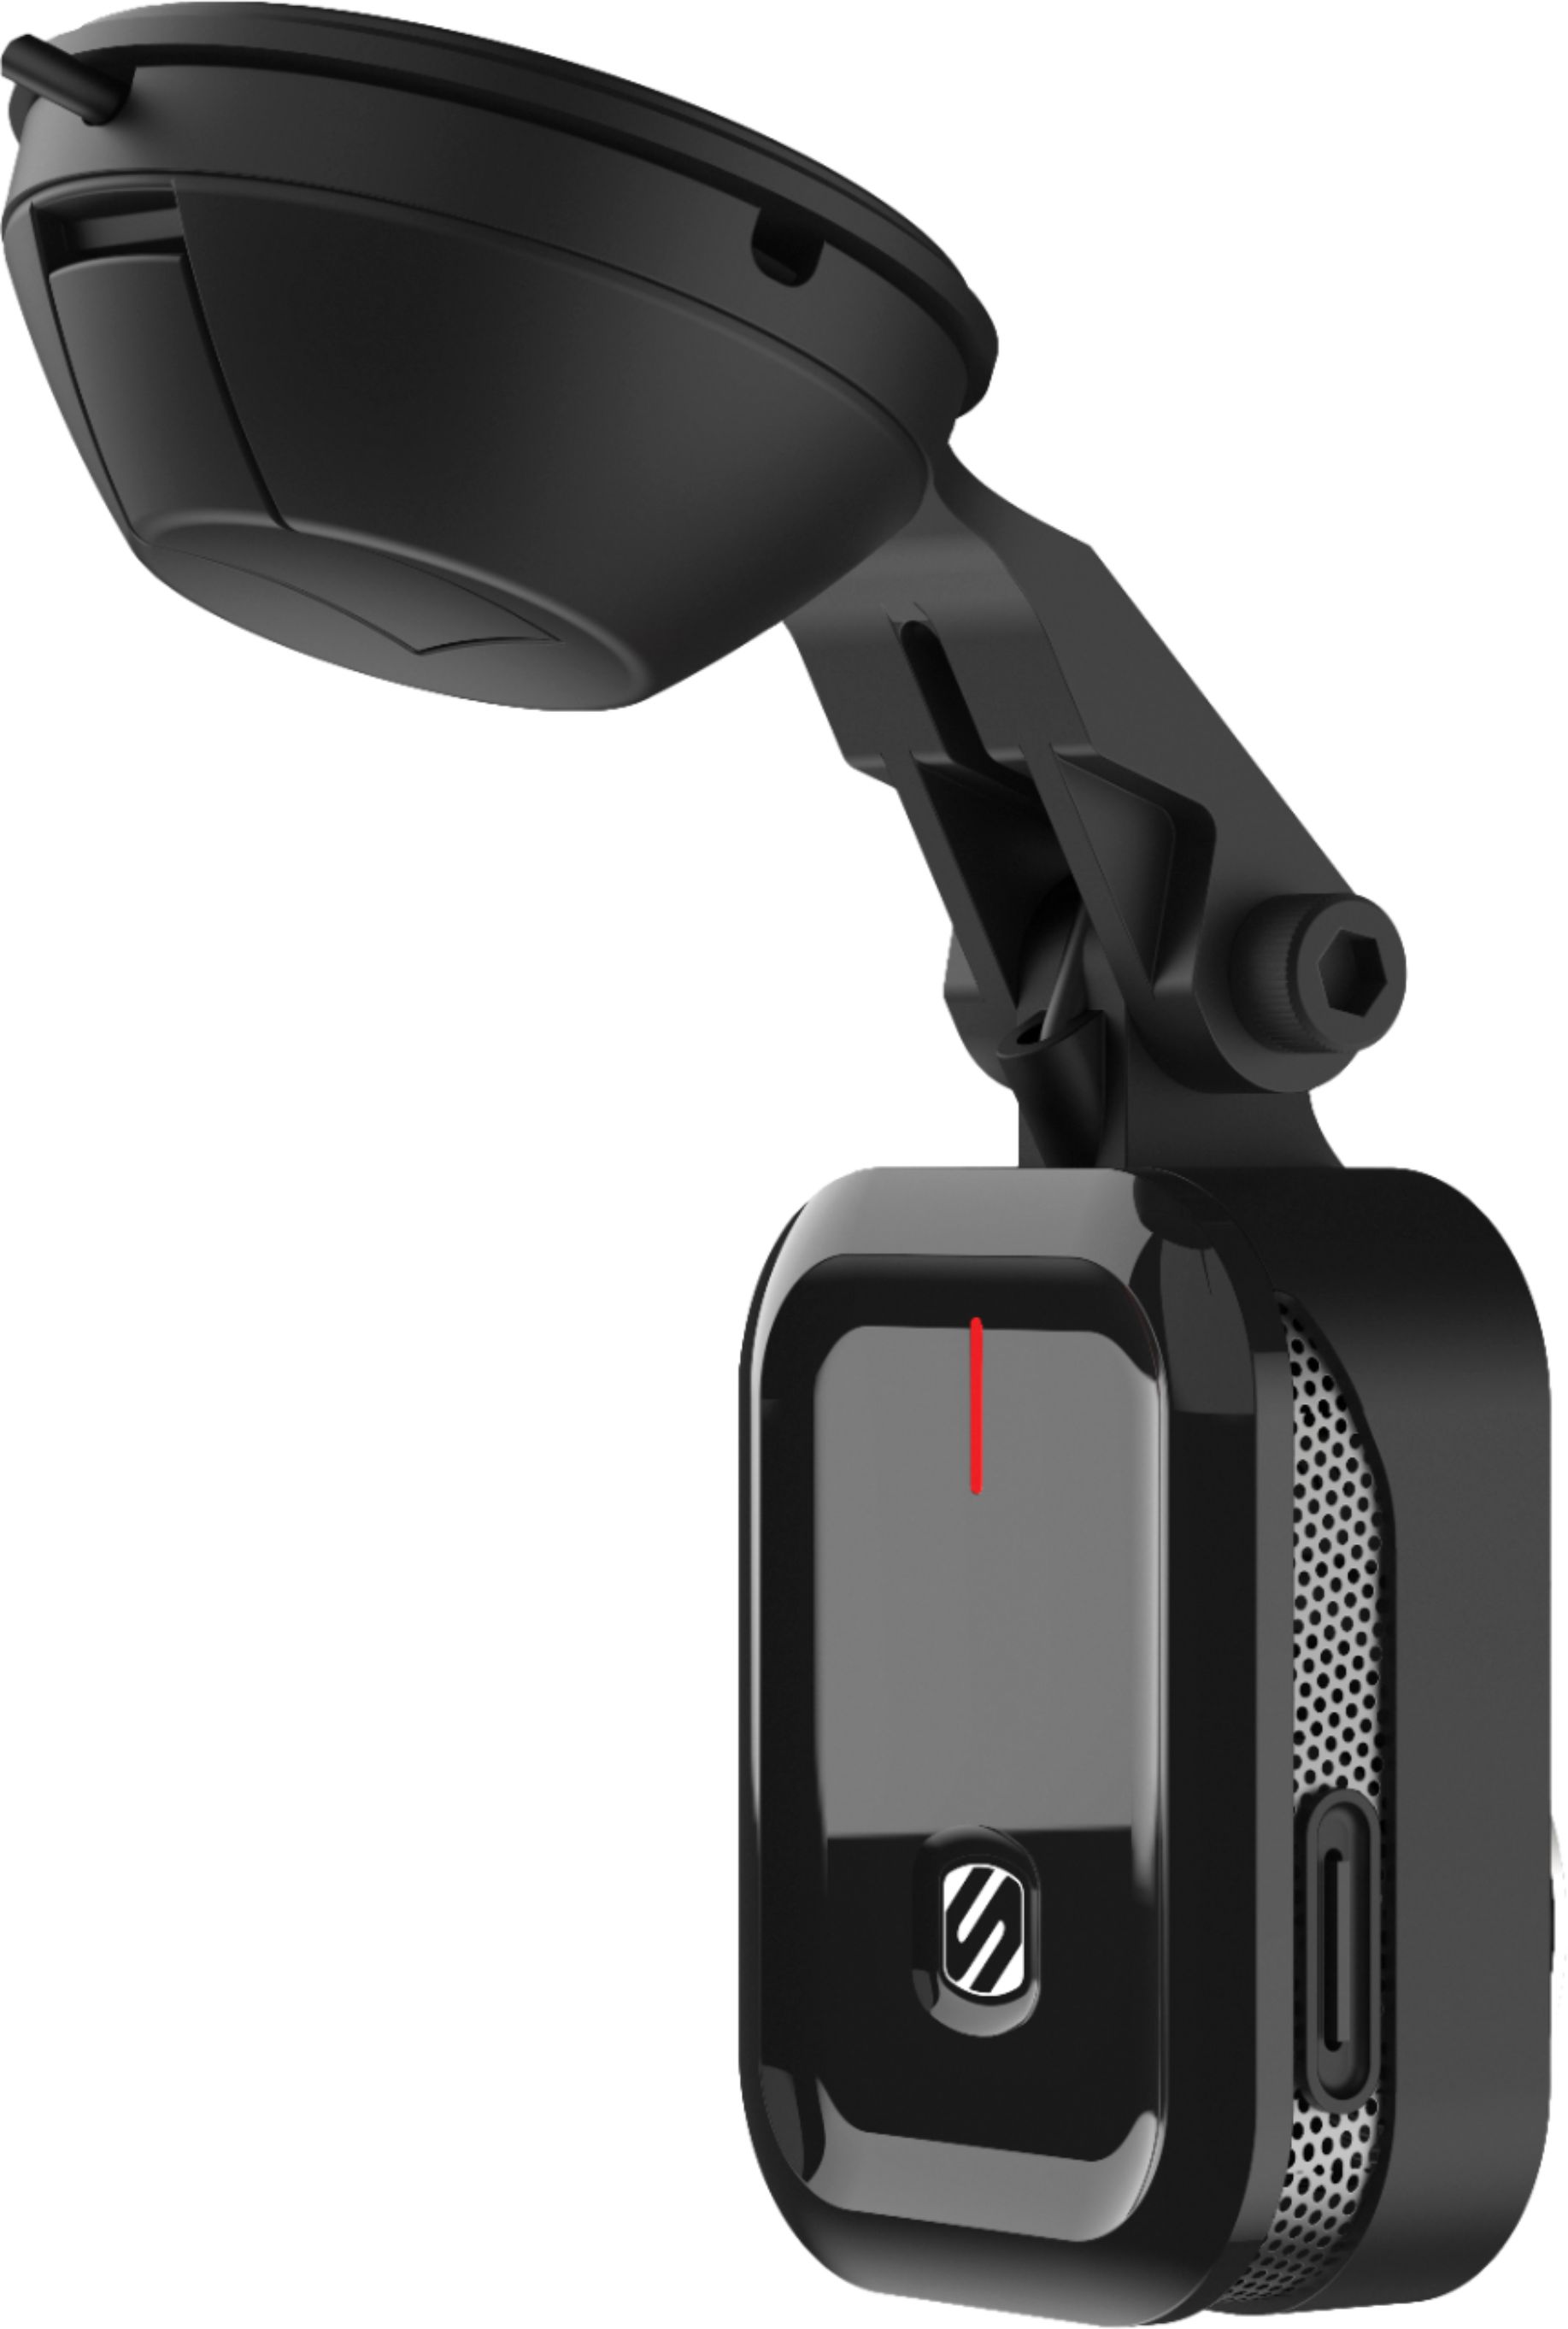 Left View: myGEKOgear - Orbit 960 Dash Cam - Black